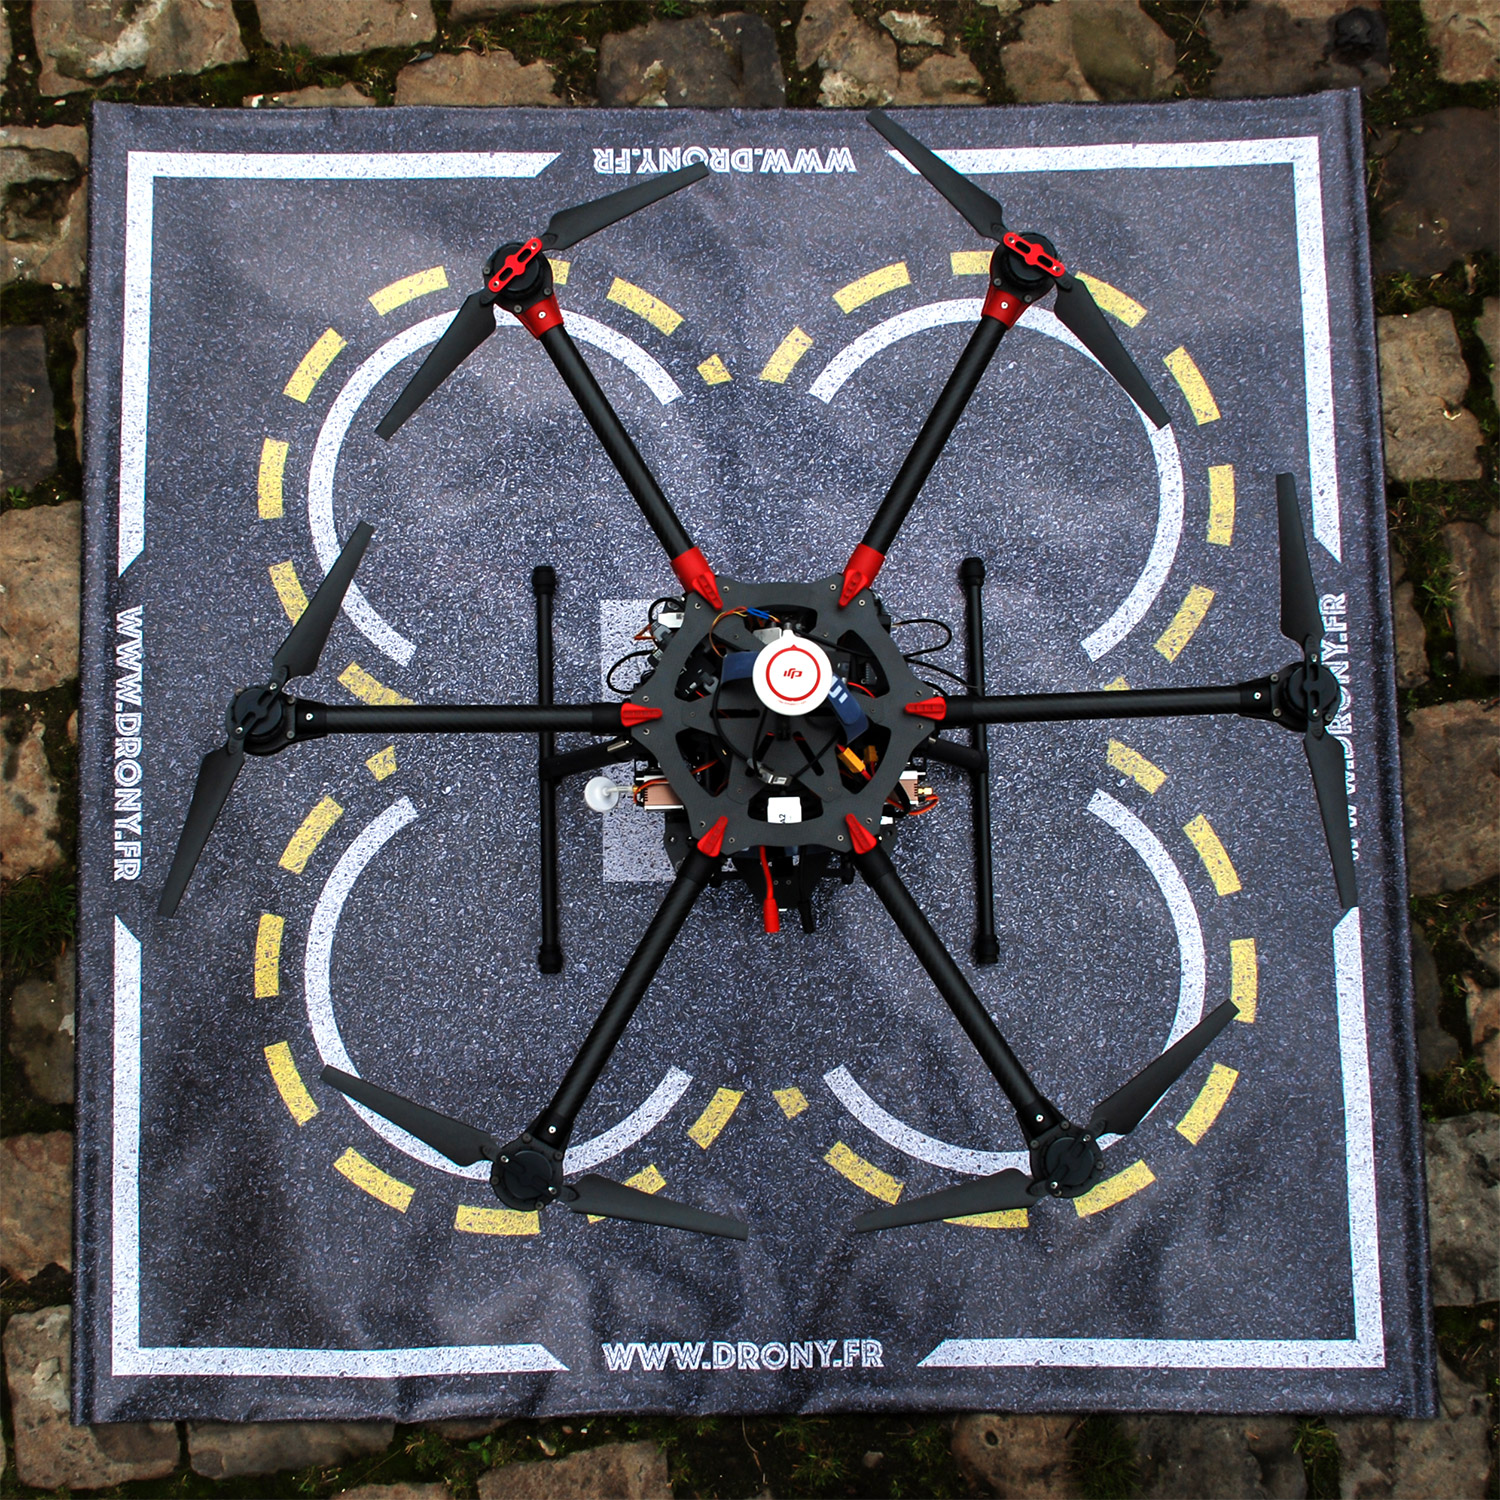 Tapis pour drone (piste atterrissage) 2 modèles – DRONE IMPORT